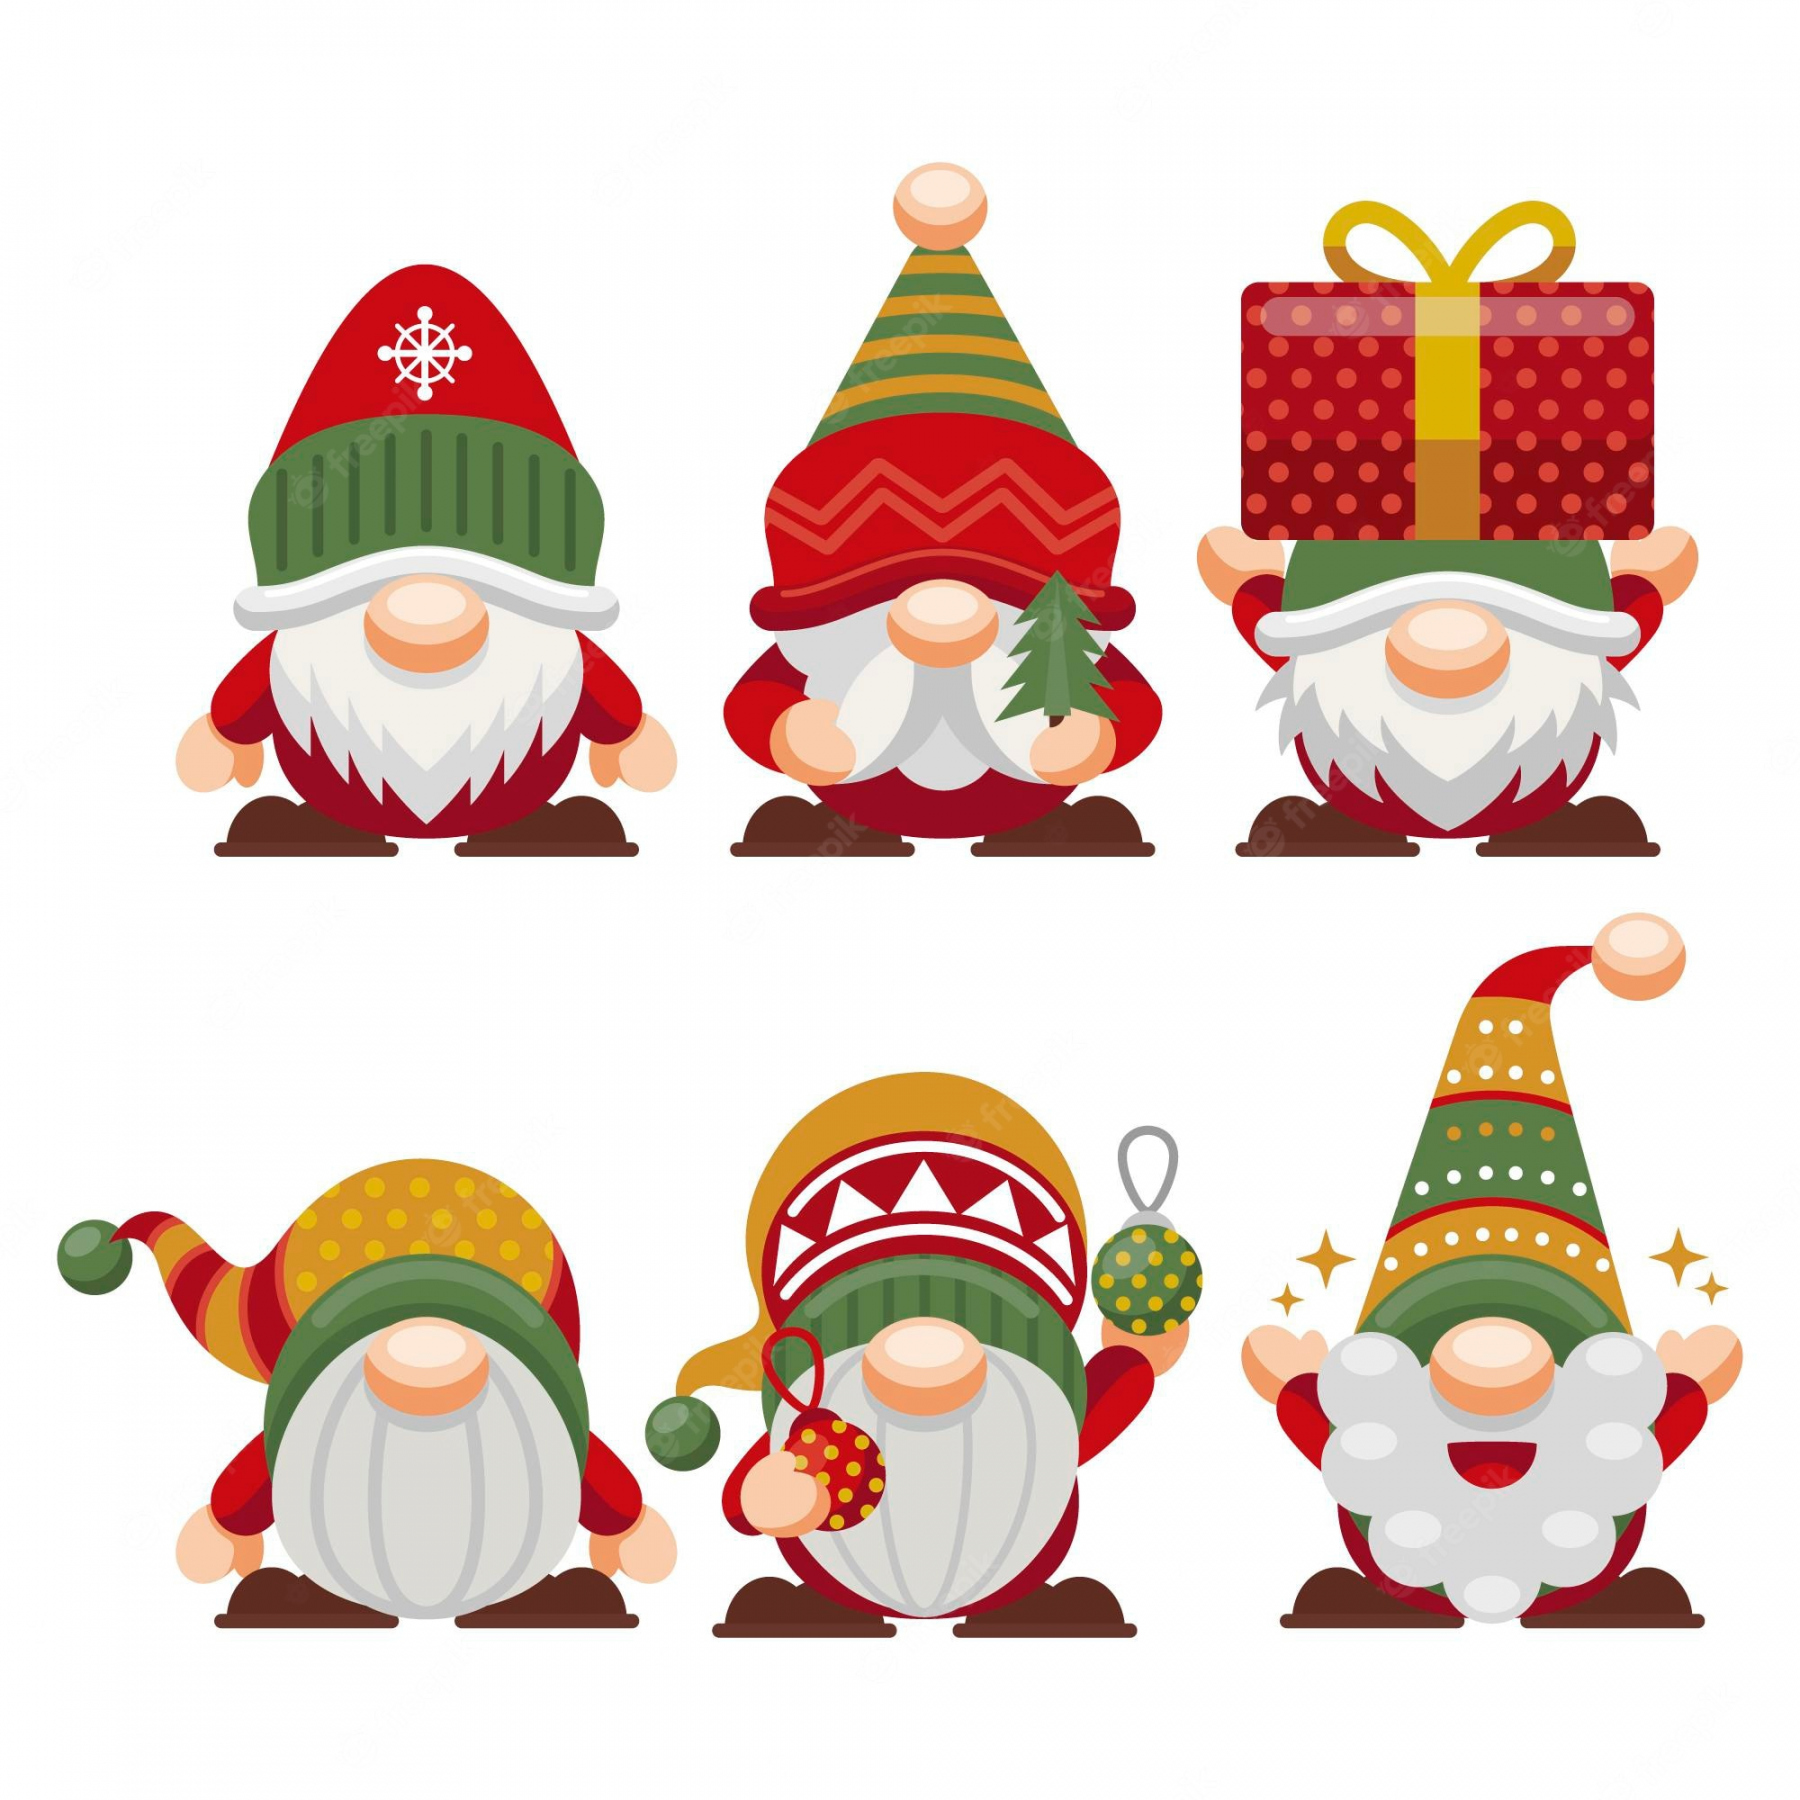 Christmas Free Clip Art Printable - Printable - Christmas Clip Art Images - Free Download on Freepik